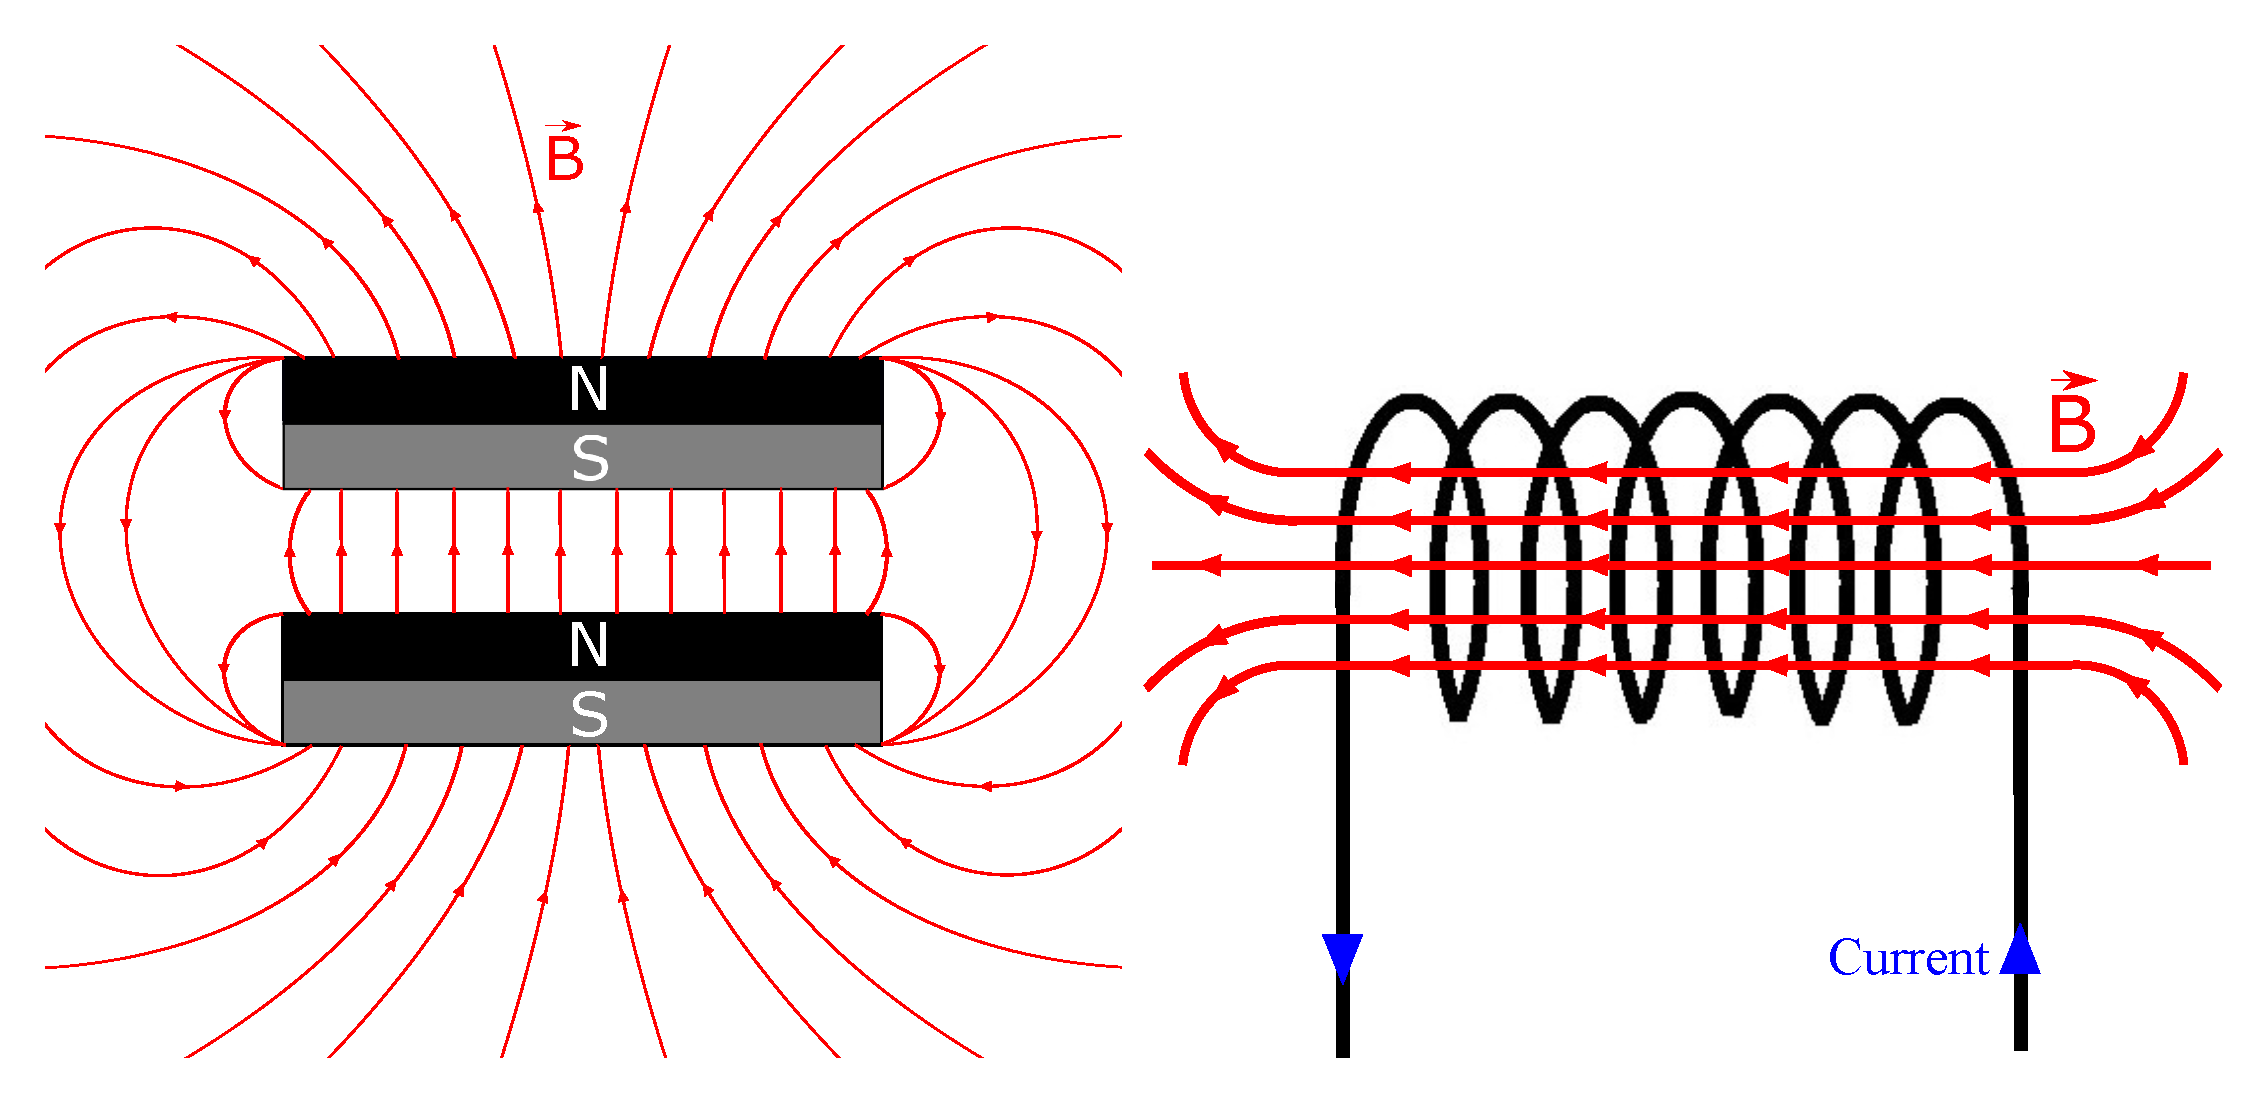 Дипольный (слева) и соленоидный (справа) магниты с поперечным и аксиальным магнитными полями соответственно. Источник: https://www.mdpi.com/2218-1997/8/1/5/htm